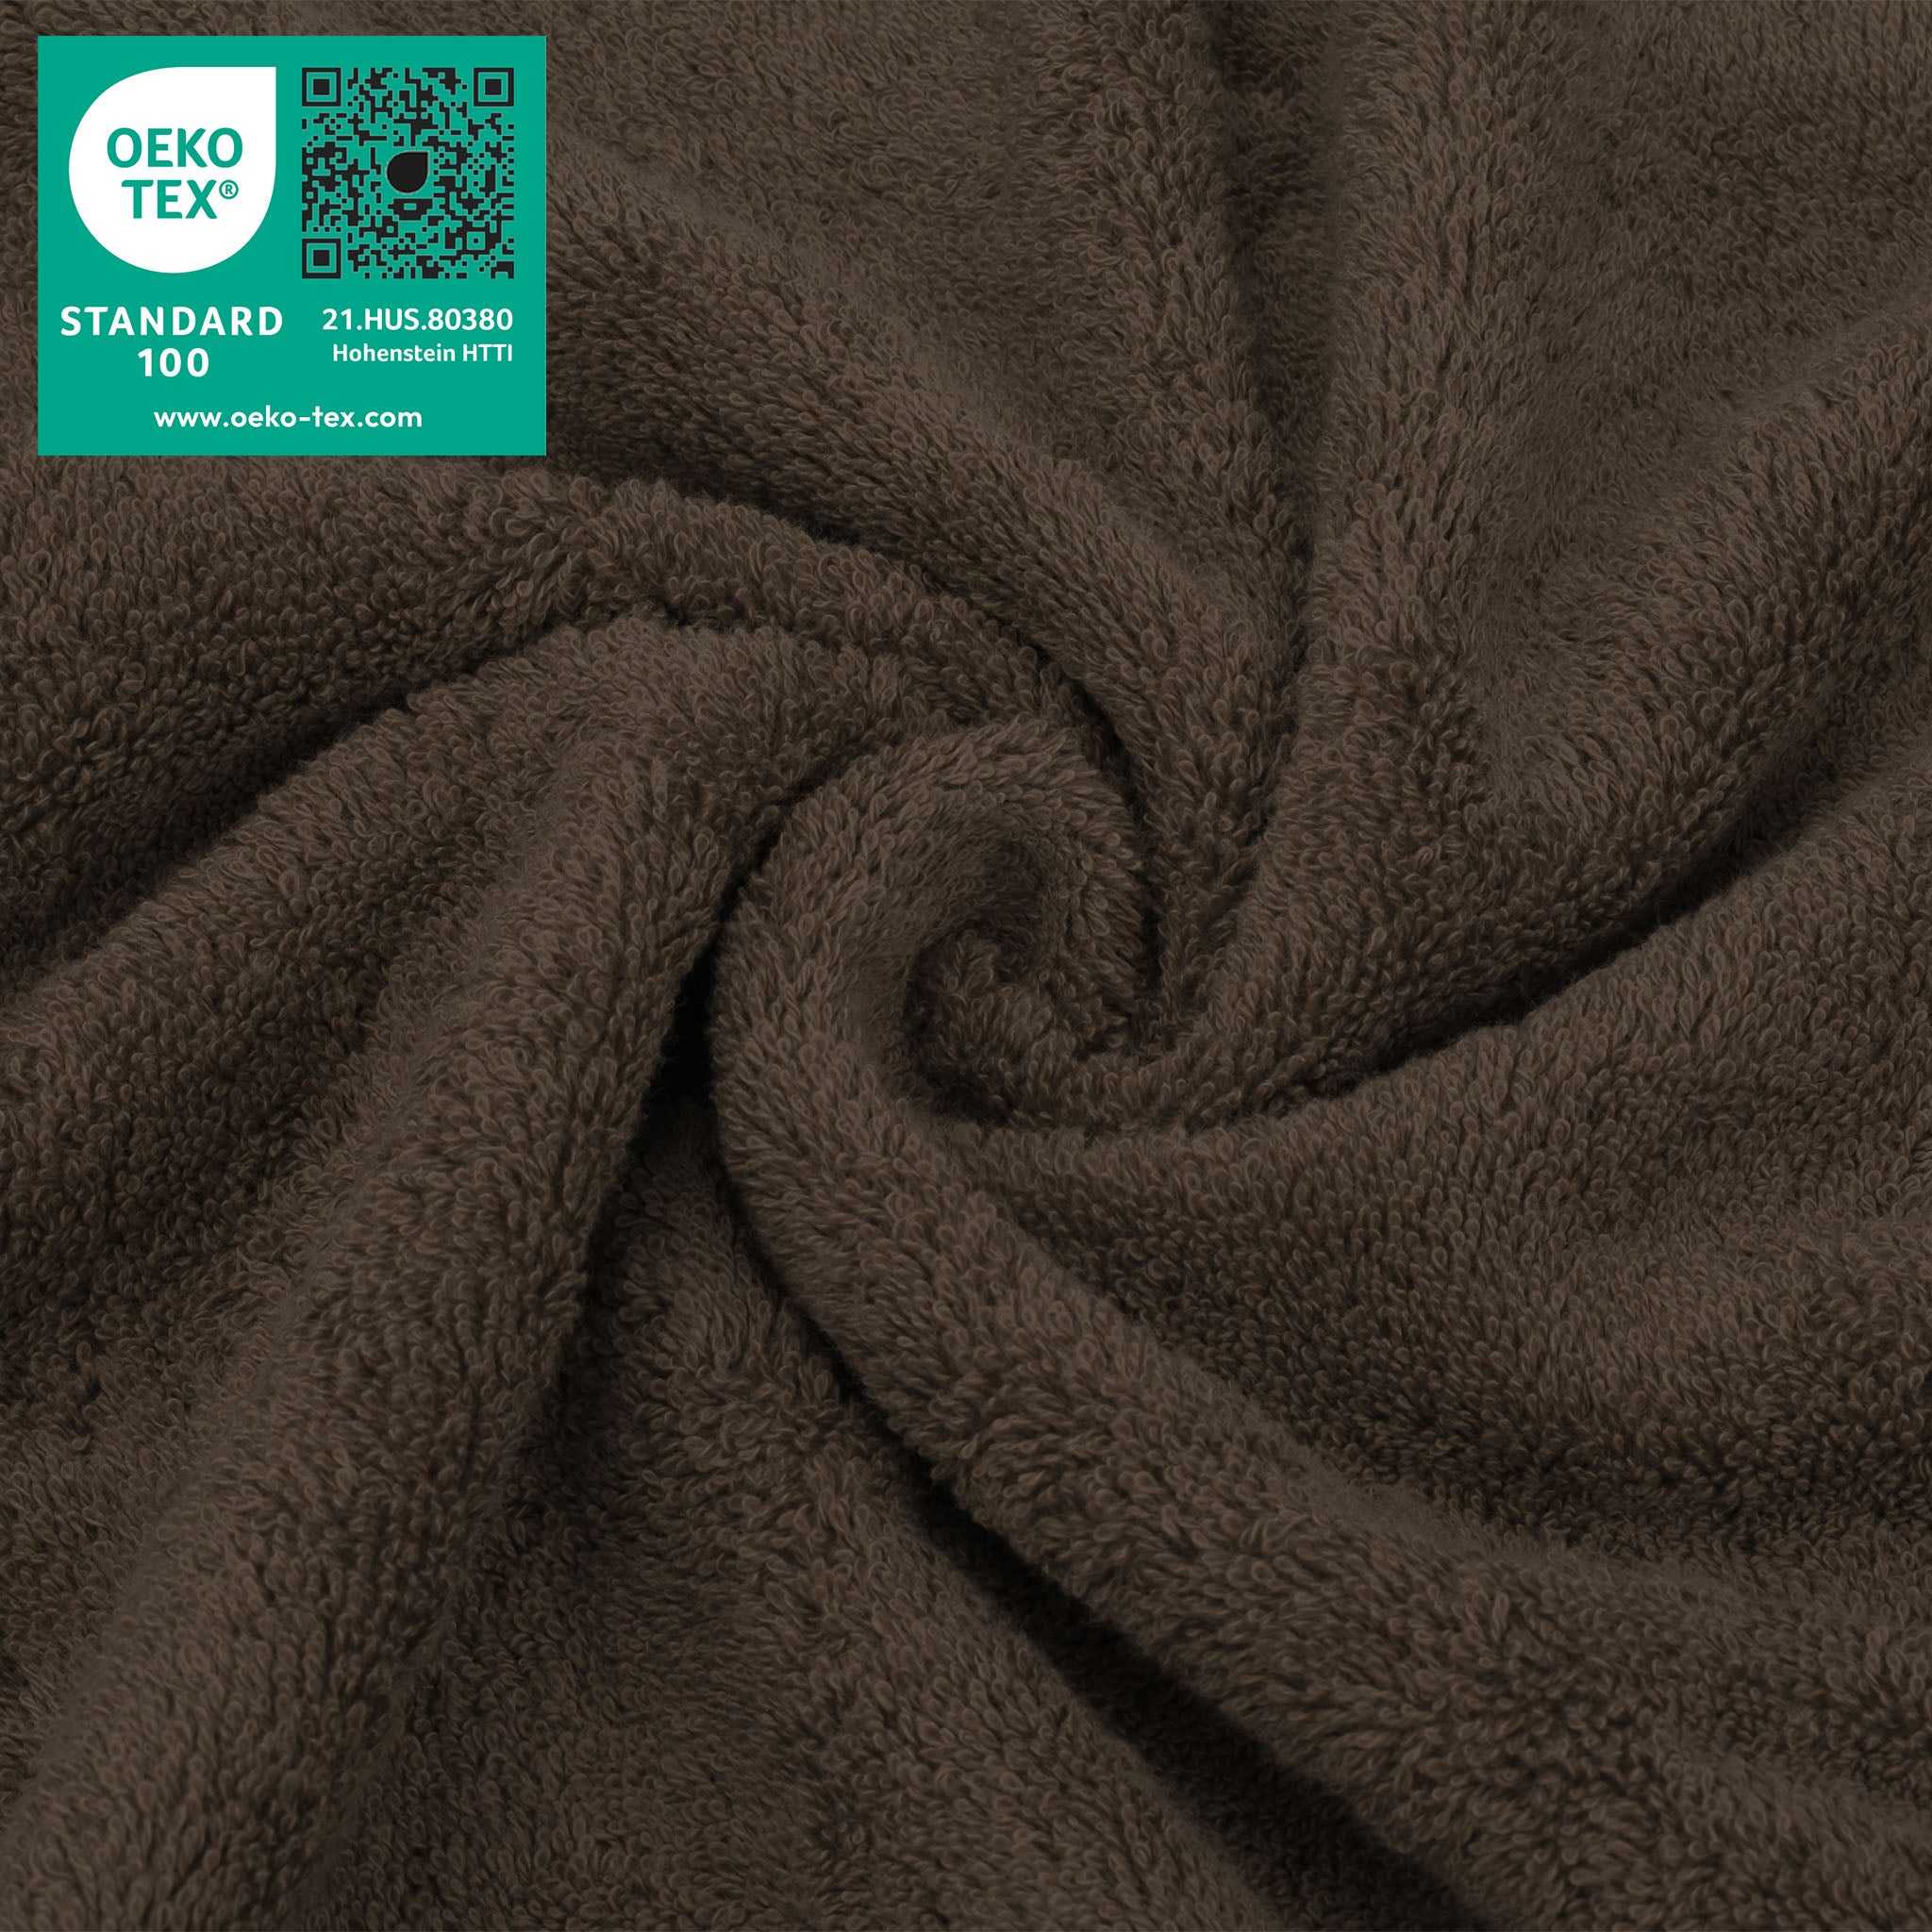 American Soft Linen 100% Turkish Cotton 4 Piece Washcloth Set chocolate-brown-3